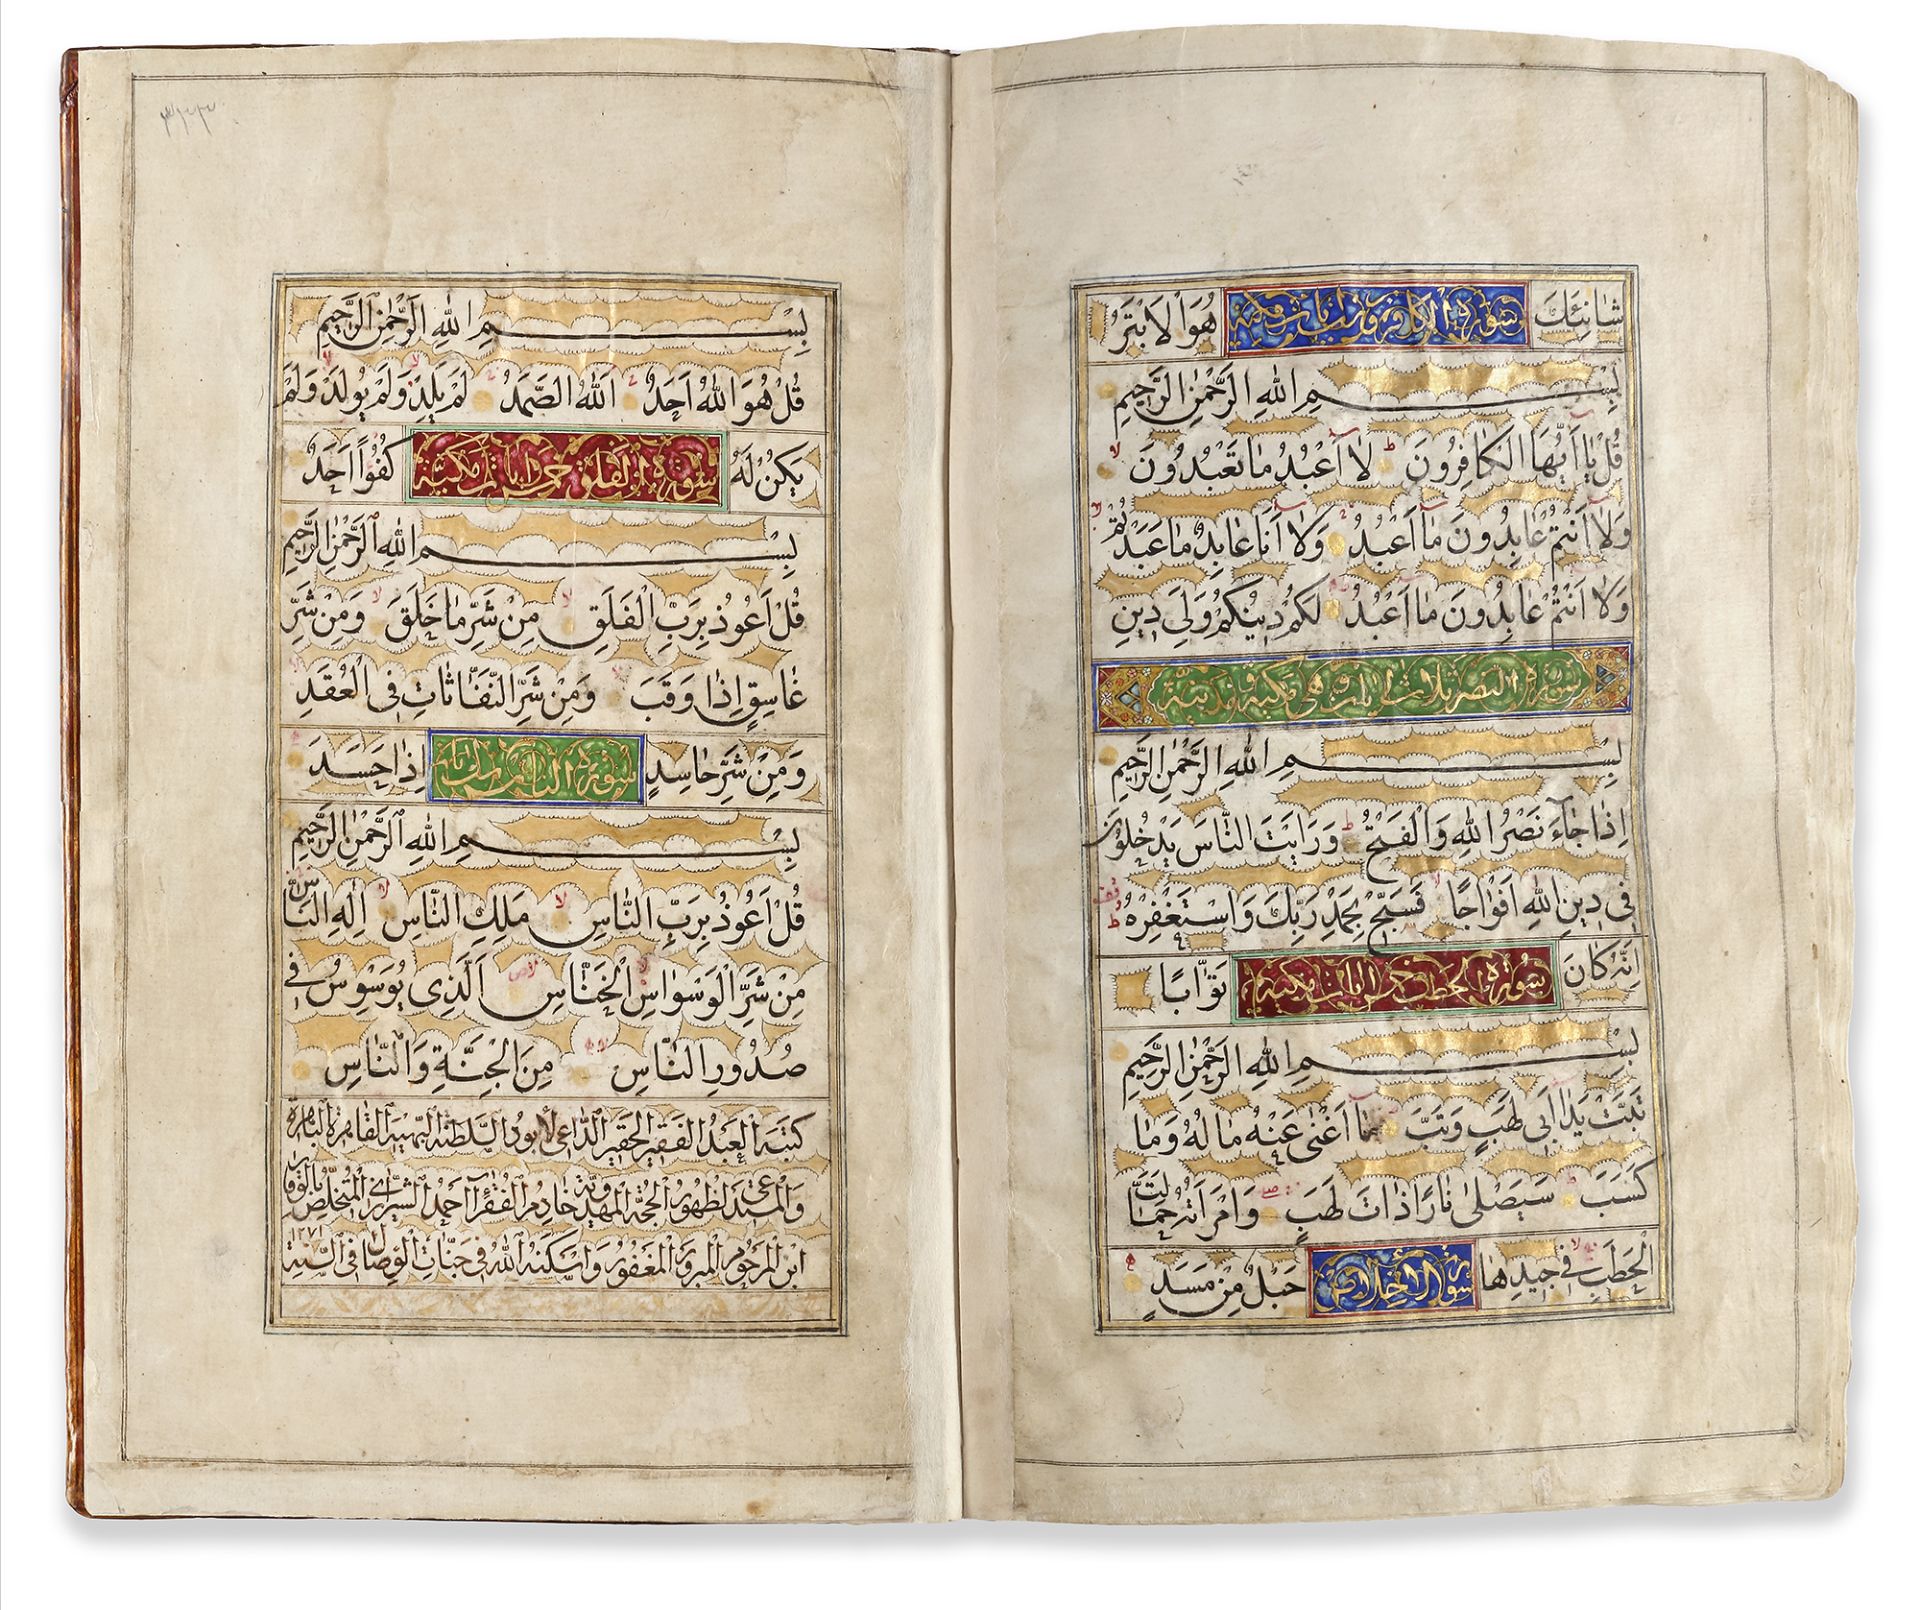 AN ILLUMINATED QAJAR QURAN BY MIRZA AHMAD WAQAR AL-SHIRAZI, DATED 1271 AH/1854 AD - Image 5 of 7